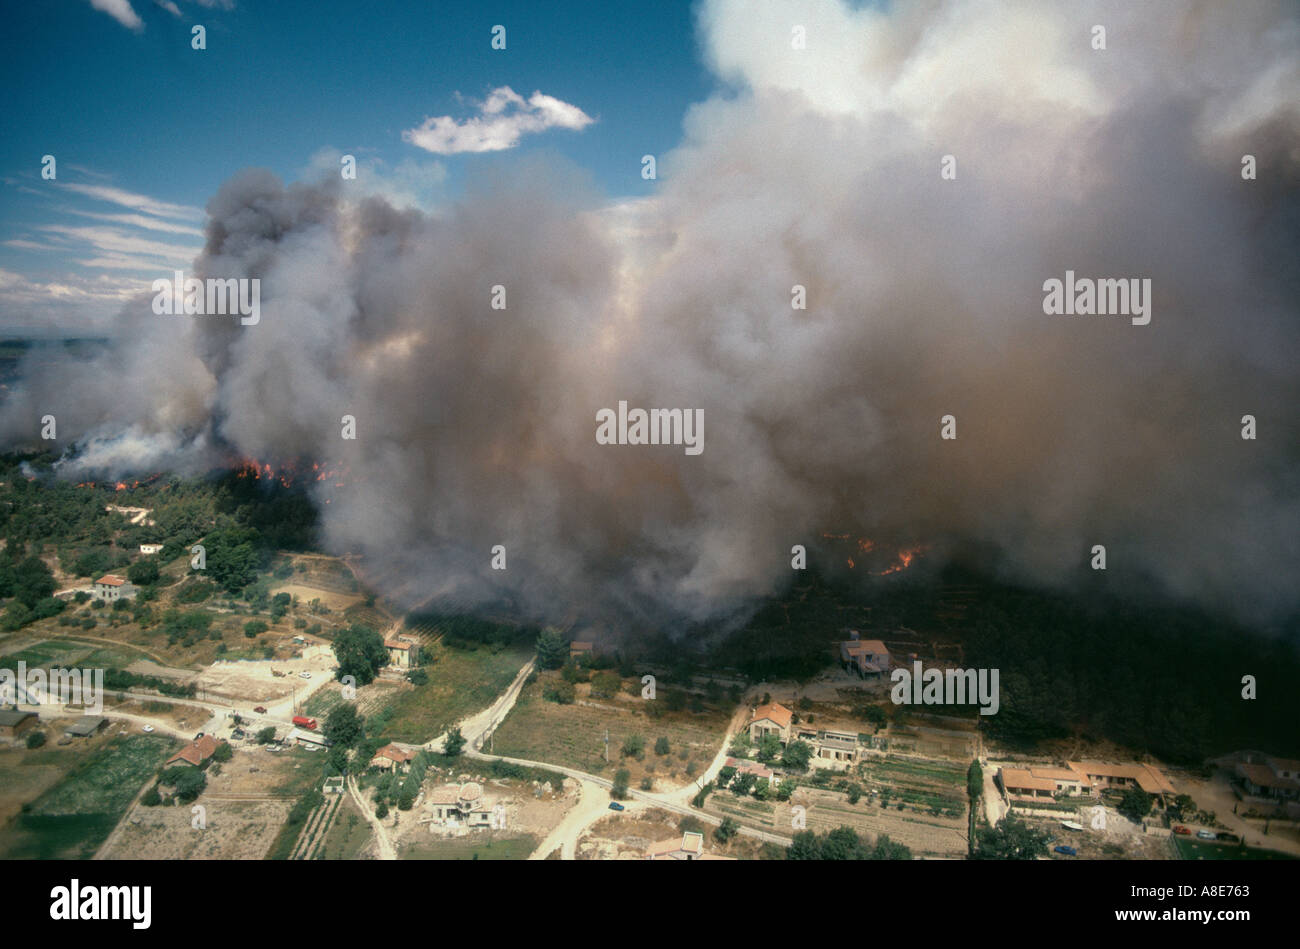 Vue aérienne d'un incendie de forêt menace les maisons de la ville, feu de forêt nuage de fumée, Sainte-Maxime, Var, Provence, France, Europe, Banque D'Images